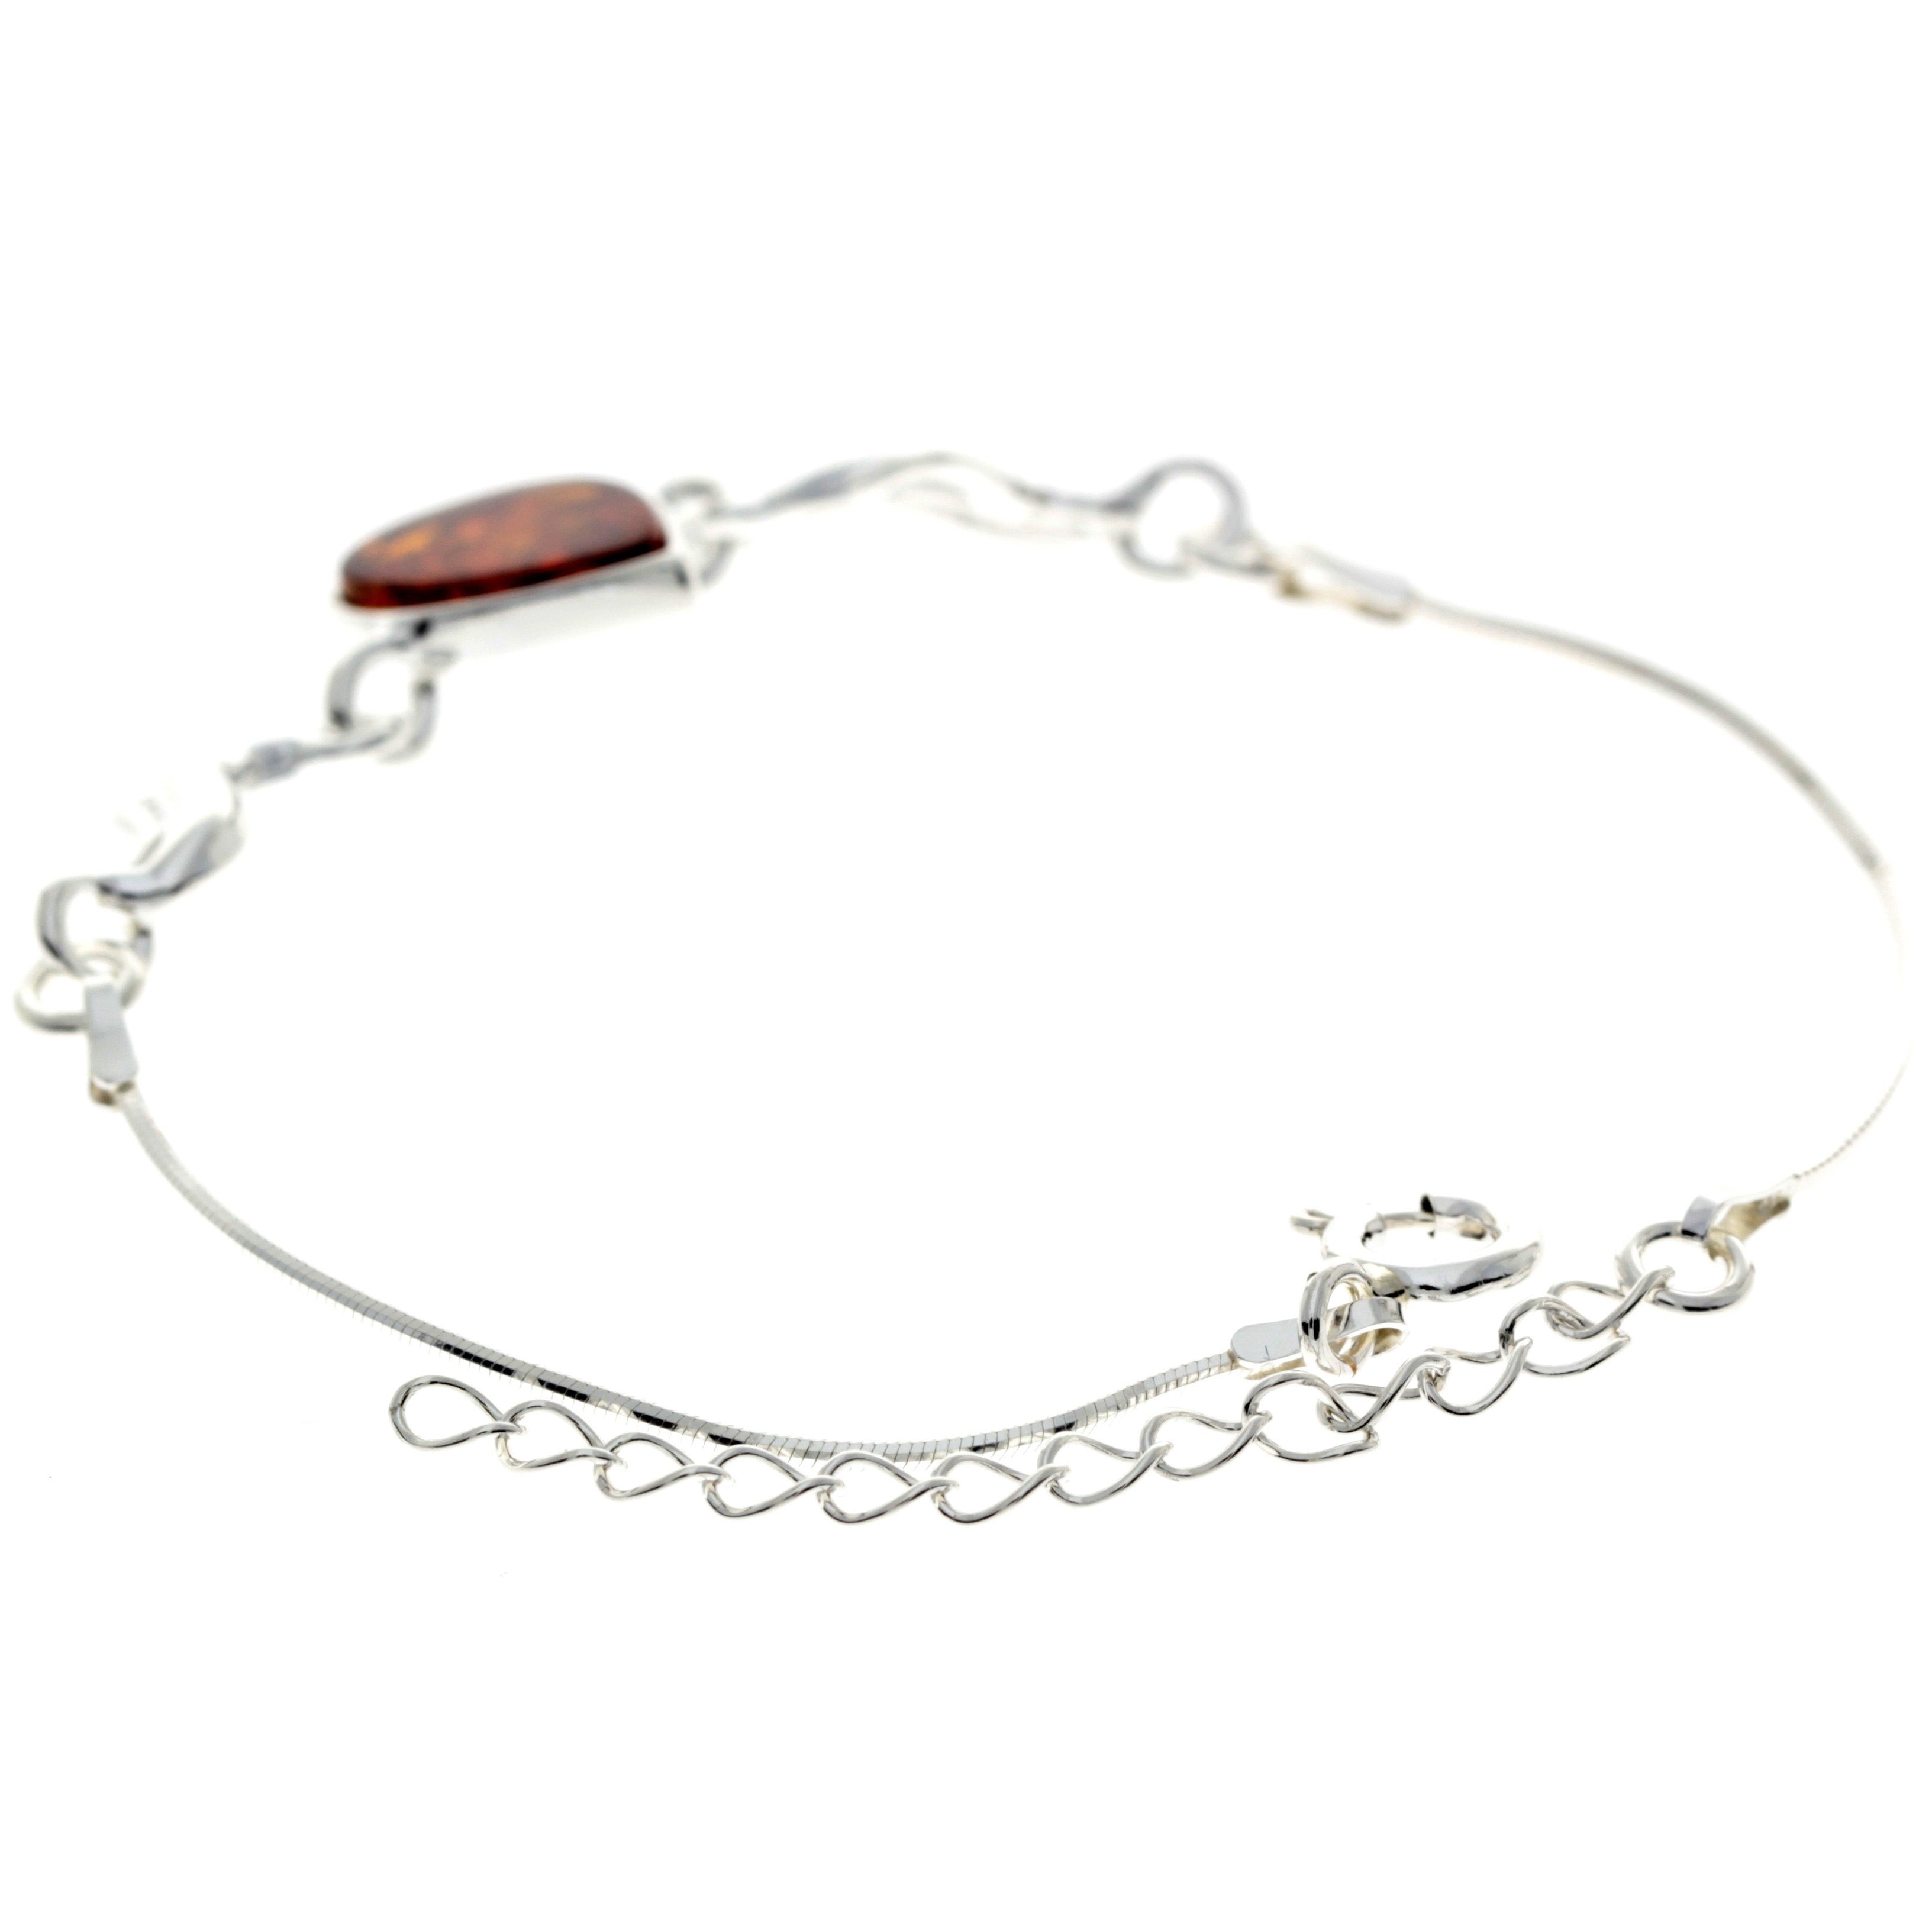 925 Sterling Silver & Baltic Amber Modern Adjustable Bracelet 20 cm - M552